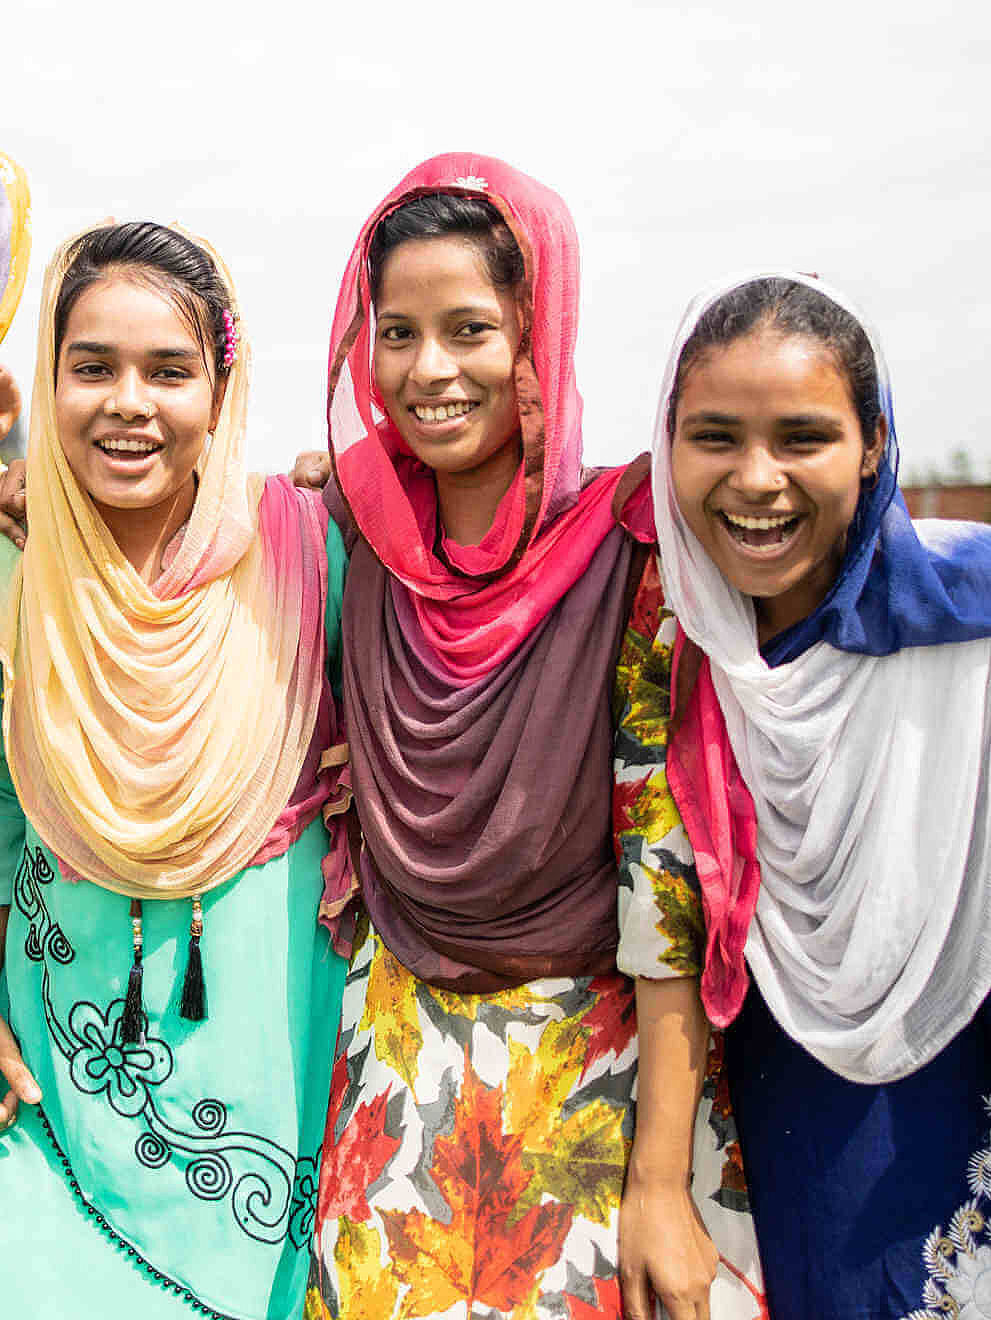 Fünf Teilnehmerinnen der CARE-Schulung in Bangladesch zum Thema "Frauen stärken" stehen zusammen und lachen